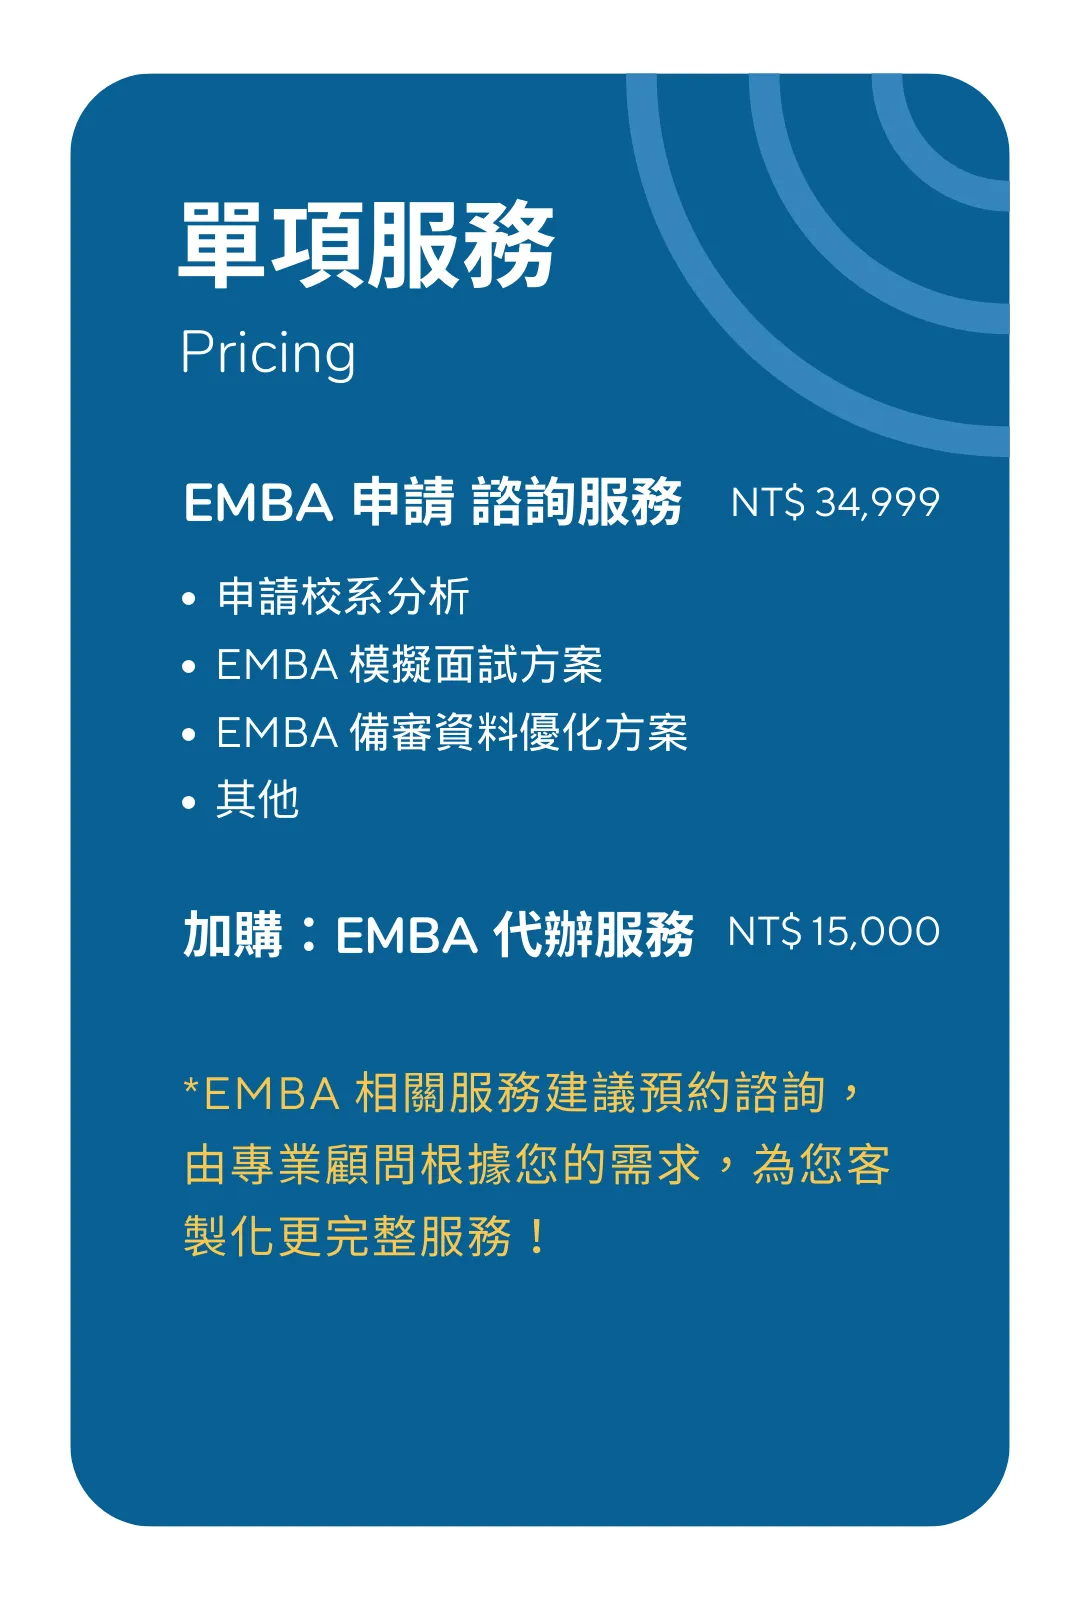 單項服務 Emba 1